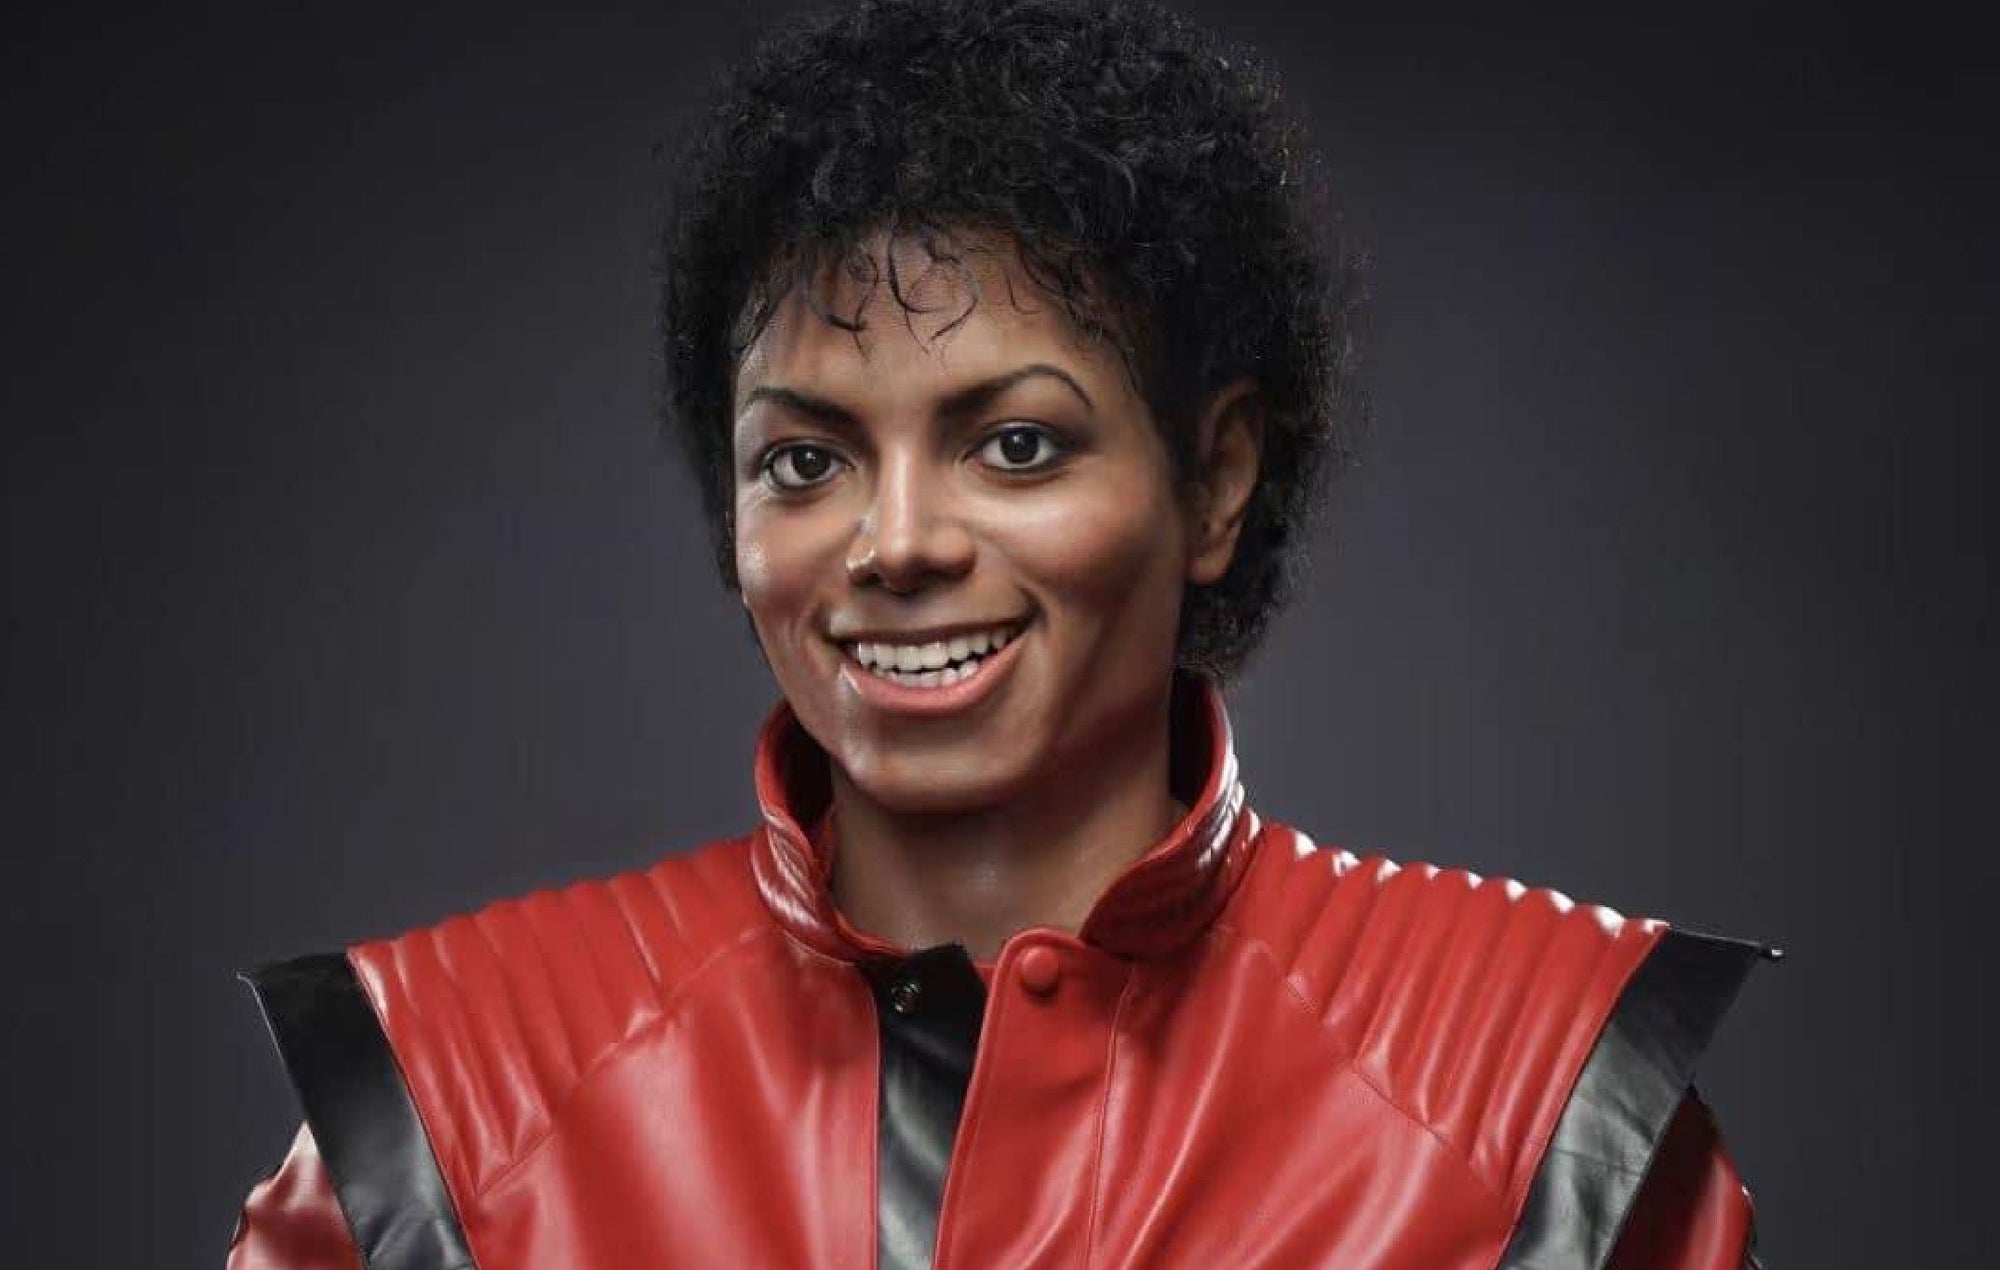 Michael Jackson Thriller Life-Size Bust - Spec Fiction Shop